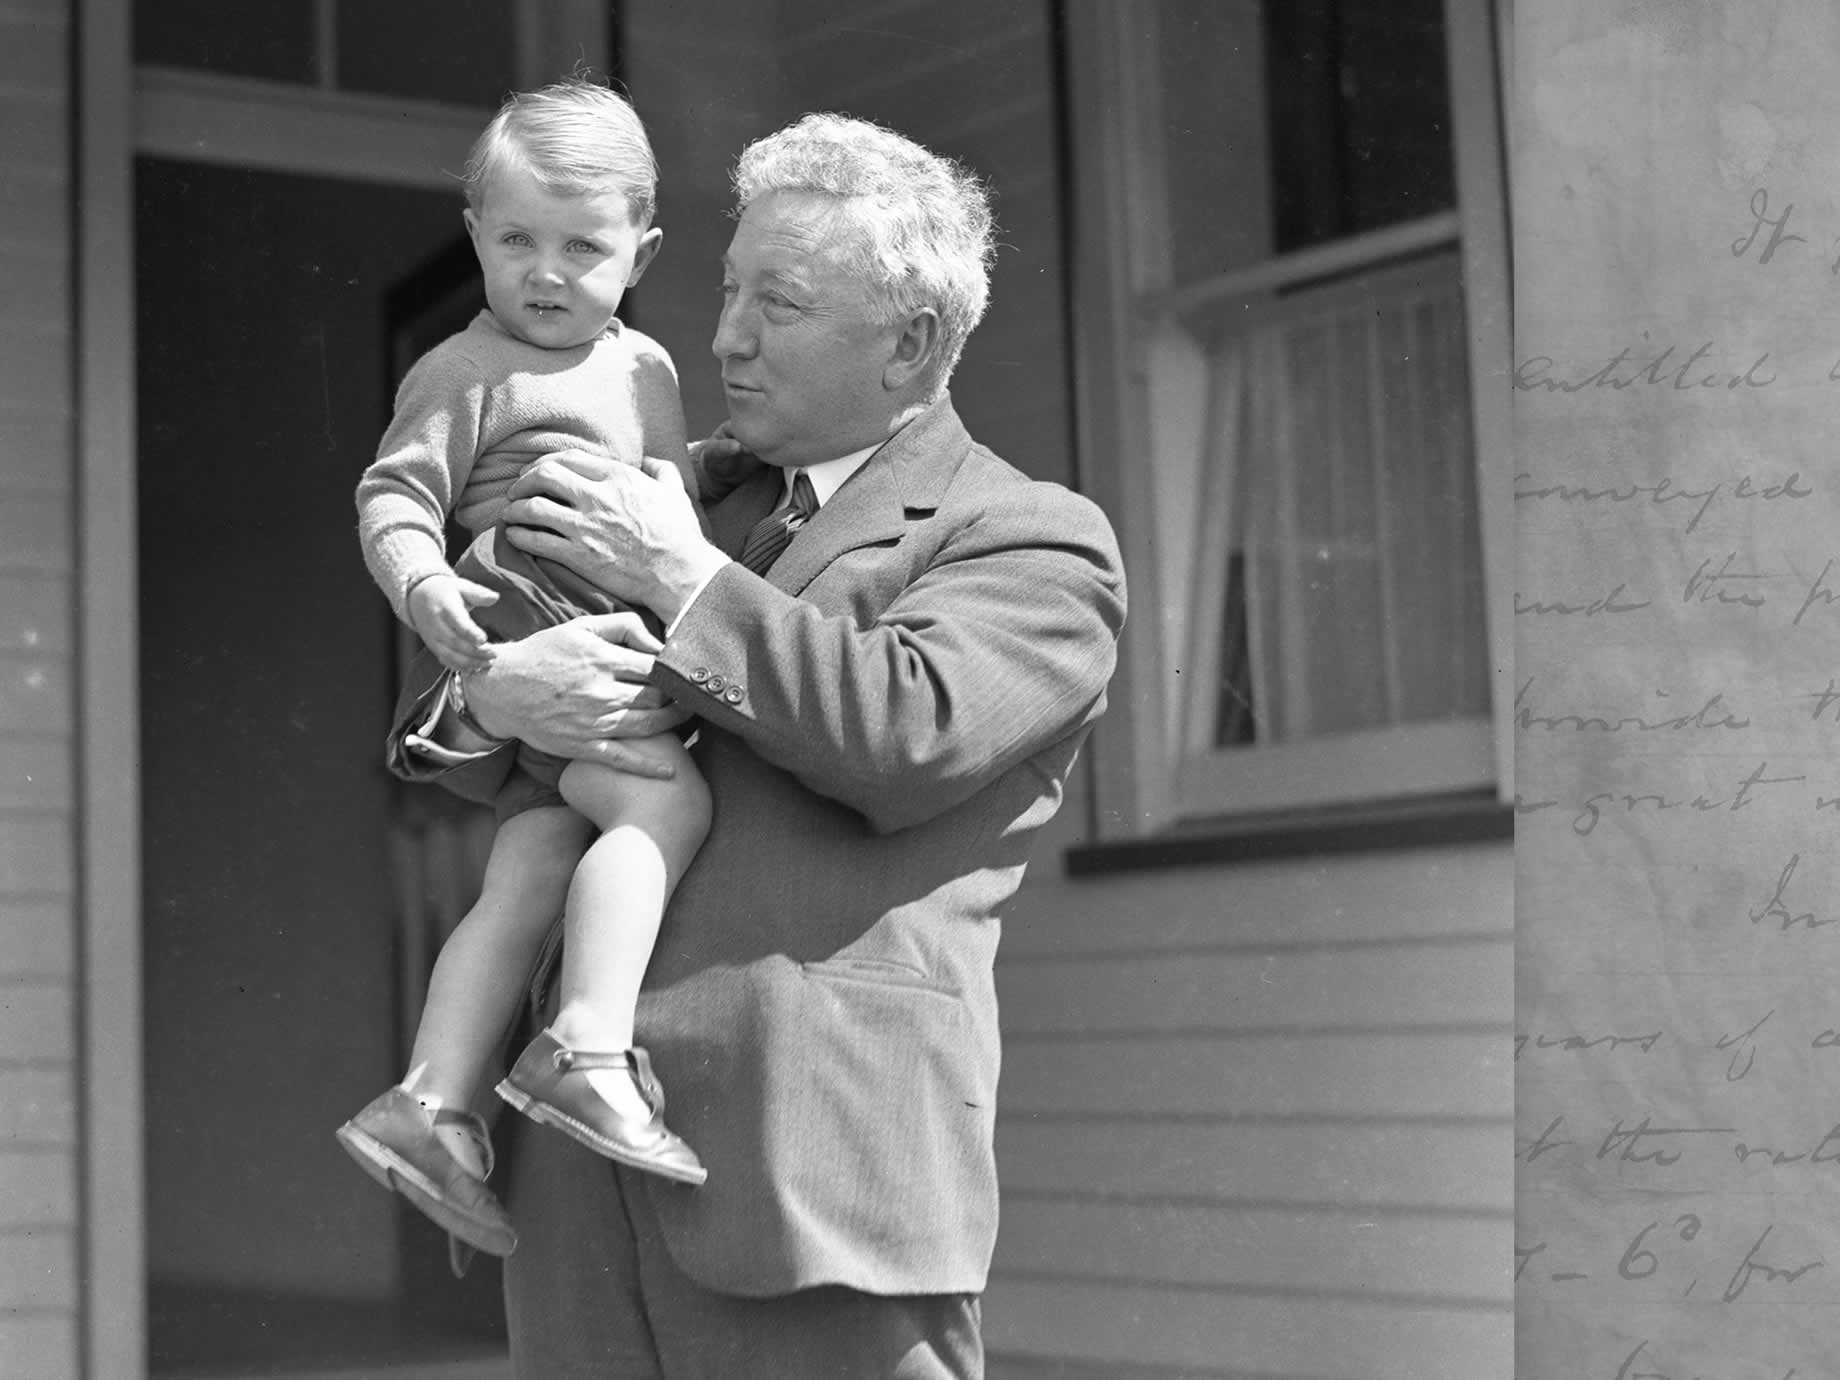 Joe Lyons vor der Hintertür seines Hauses mit einem kleinen Kind, Mitte der 20er